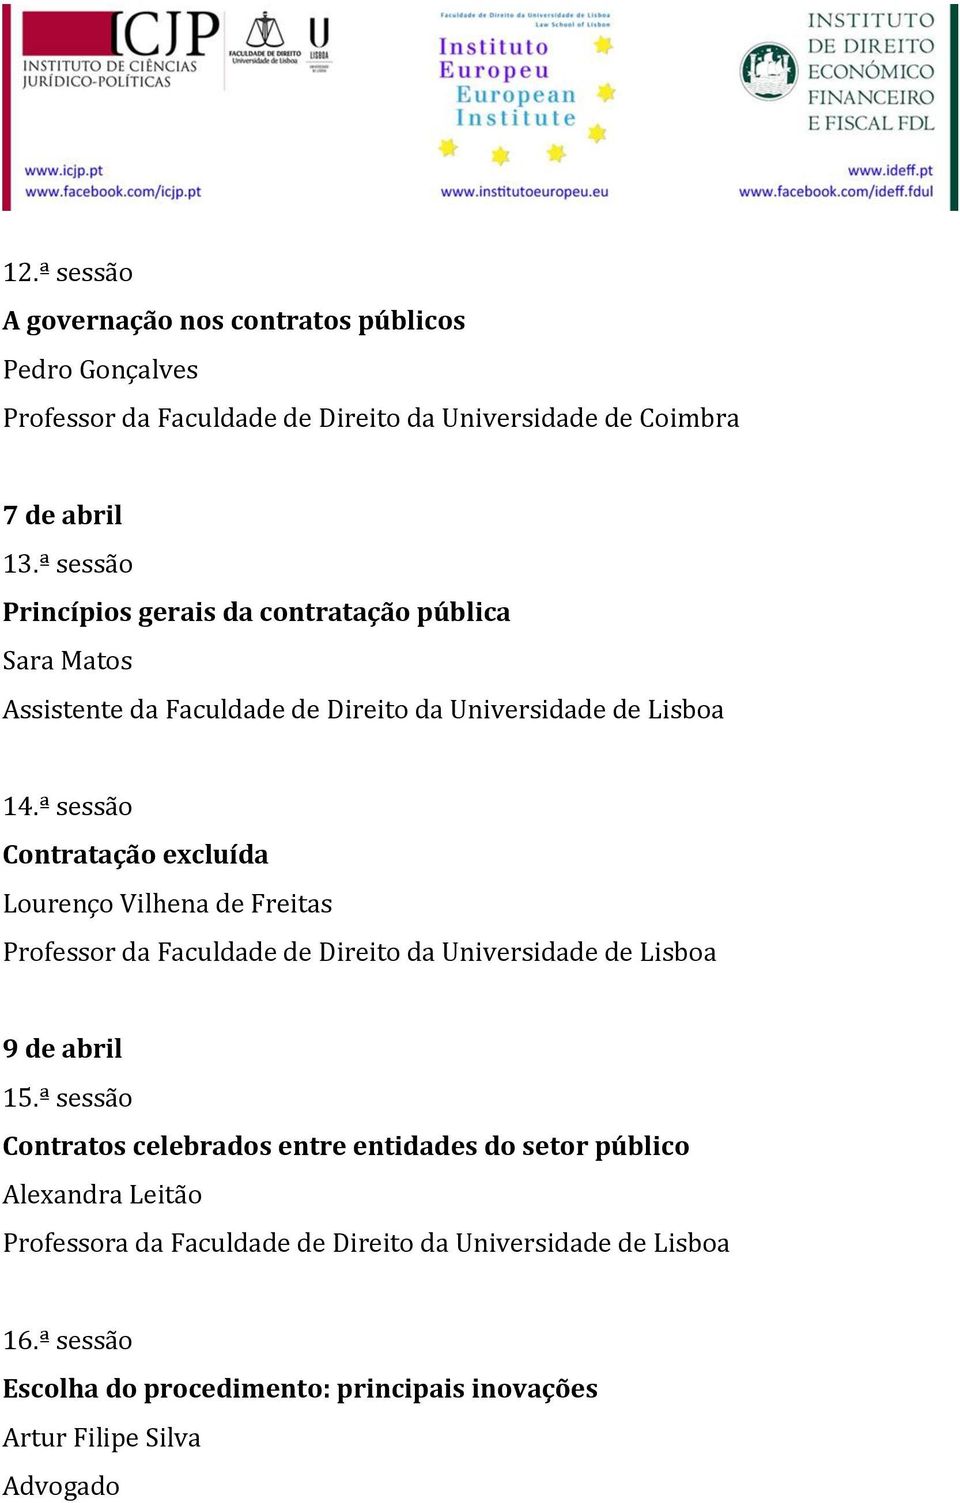 ª sessão Contratação excluída Lourenço Vilhena de Freitas 9 de abril 15.